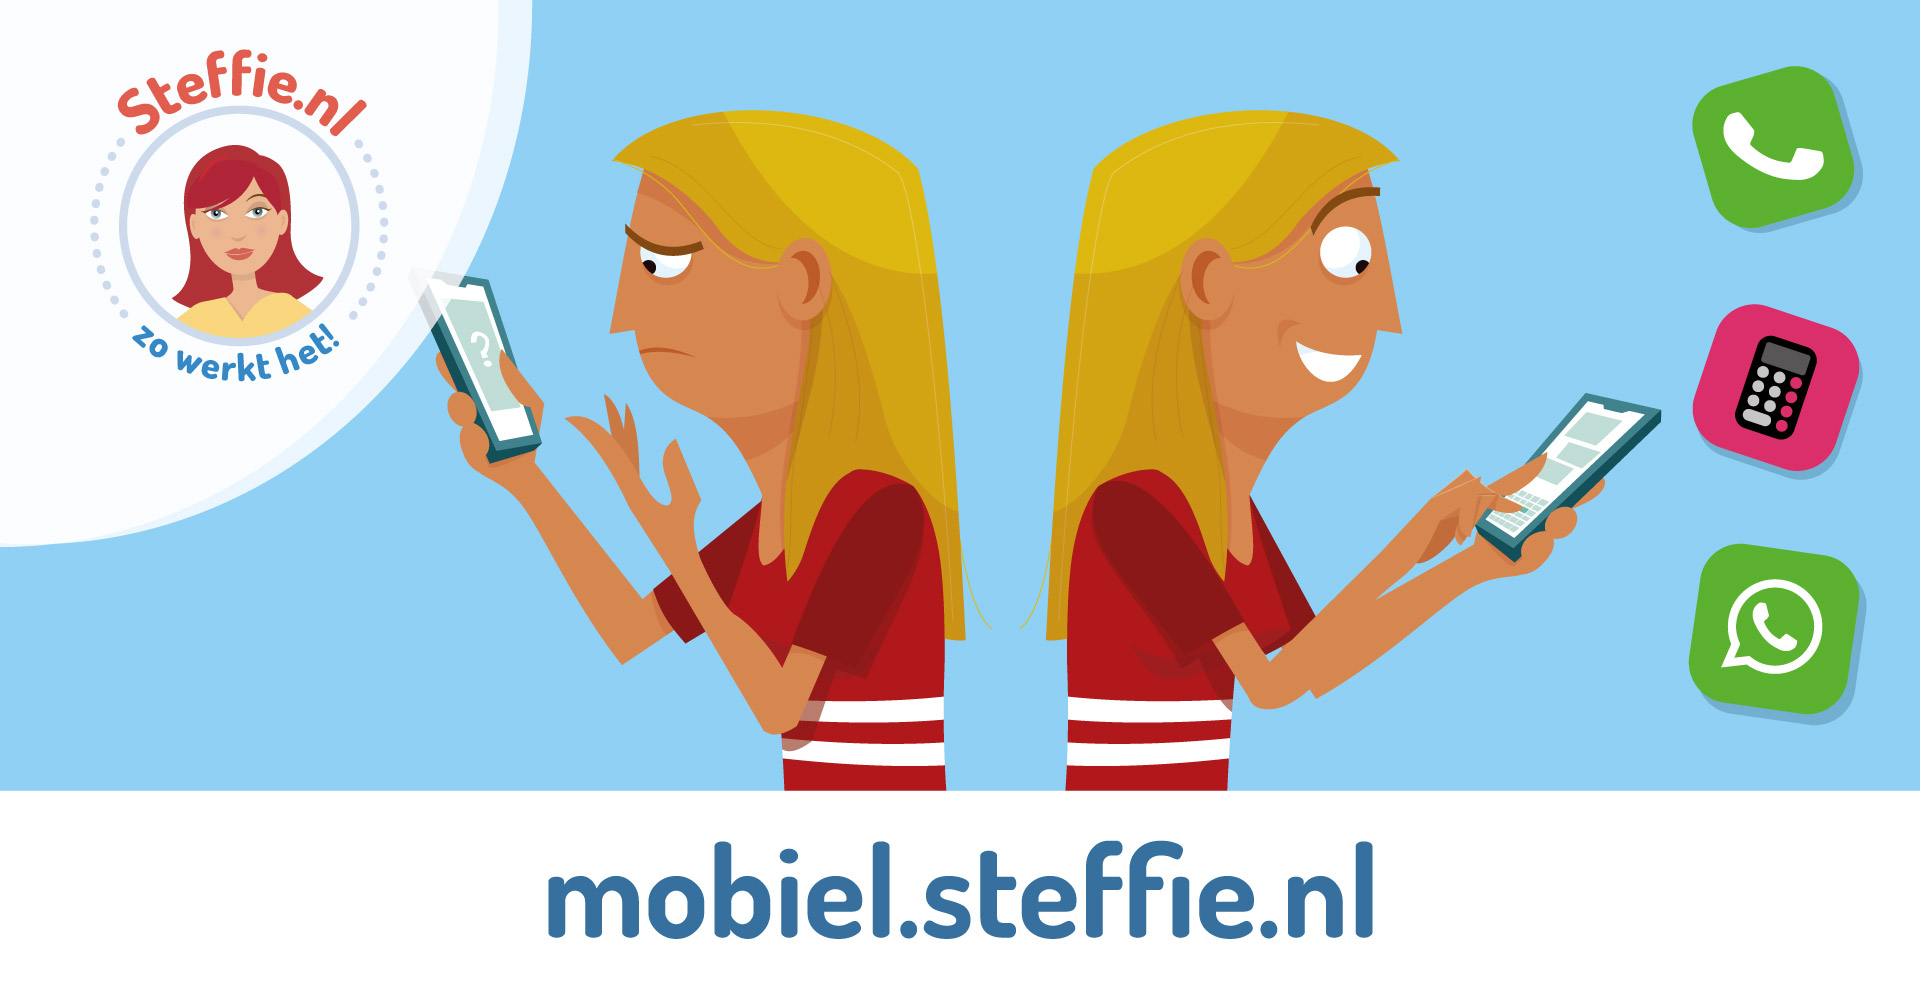 Bezoek ook eens Mobiel.steffie.nl voor een uitleg over mobieltjes in makkelijke taal.